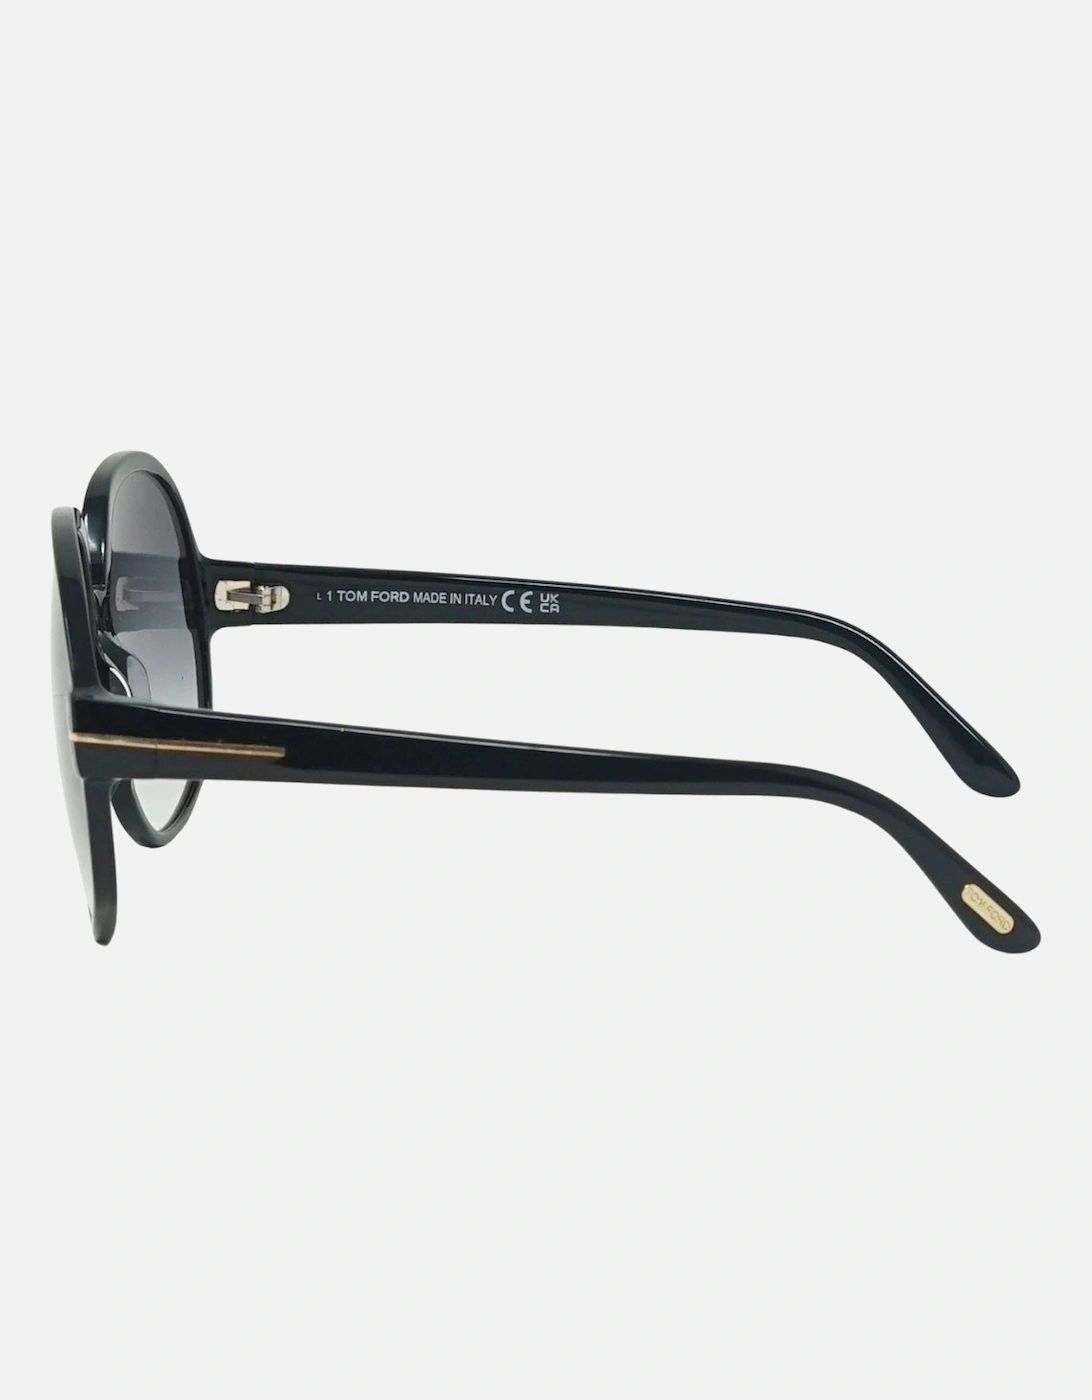 Claude-02 FT0991 01B Black Sunglasses